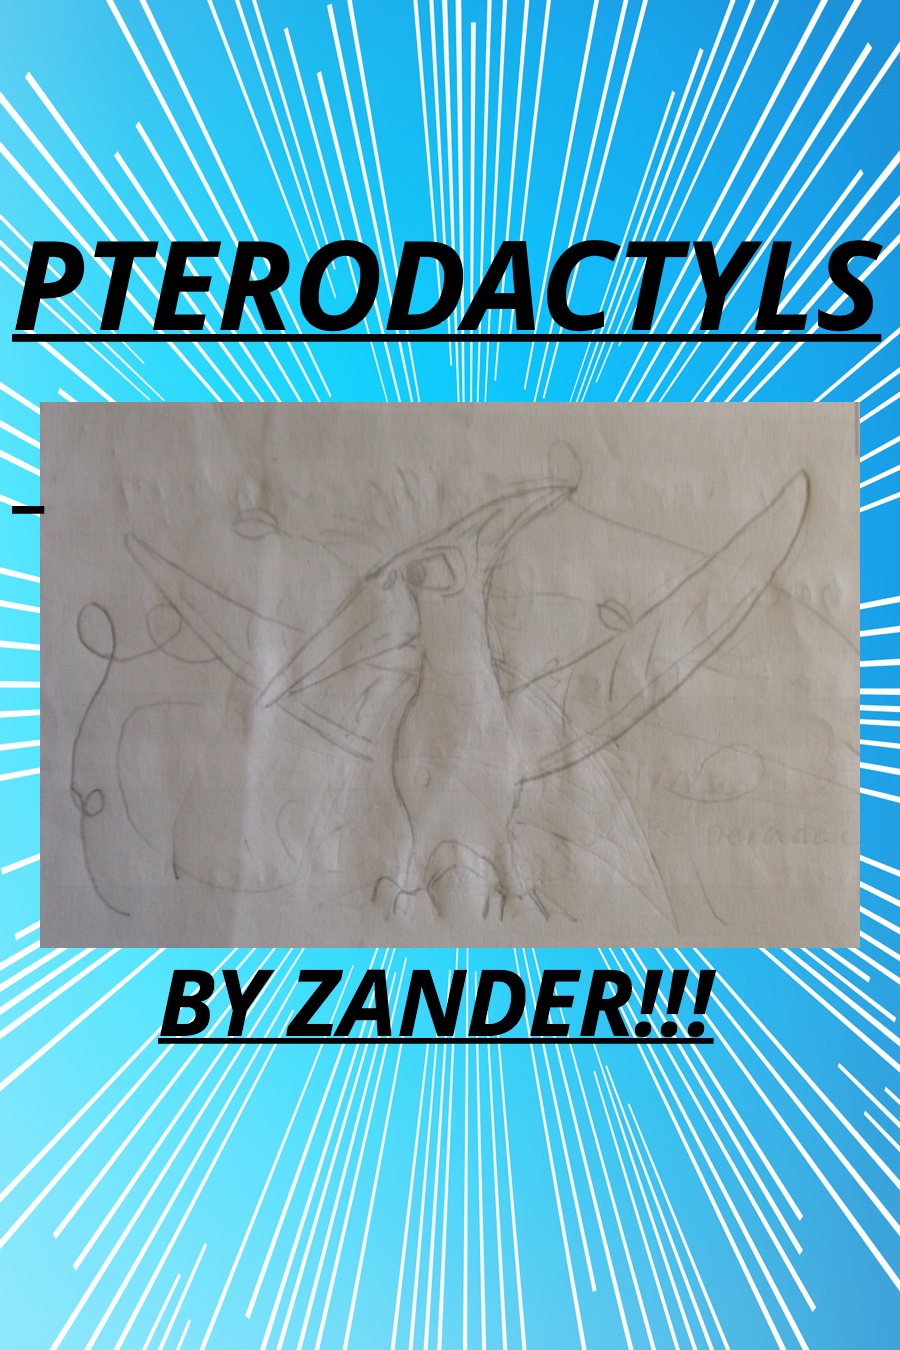 Pteridactals